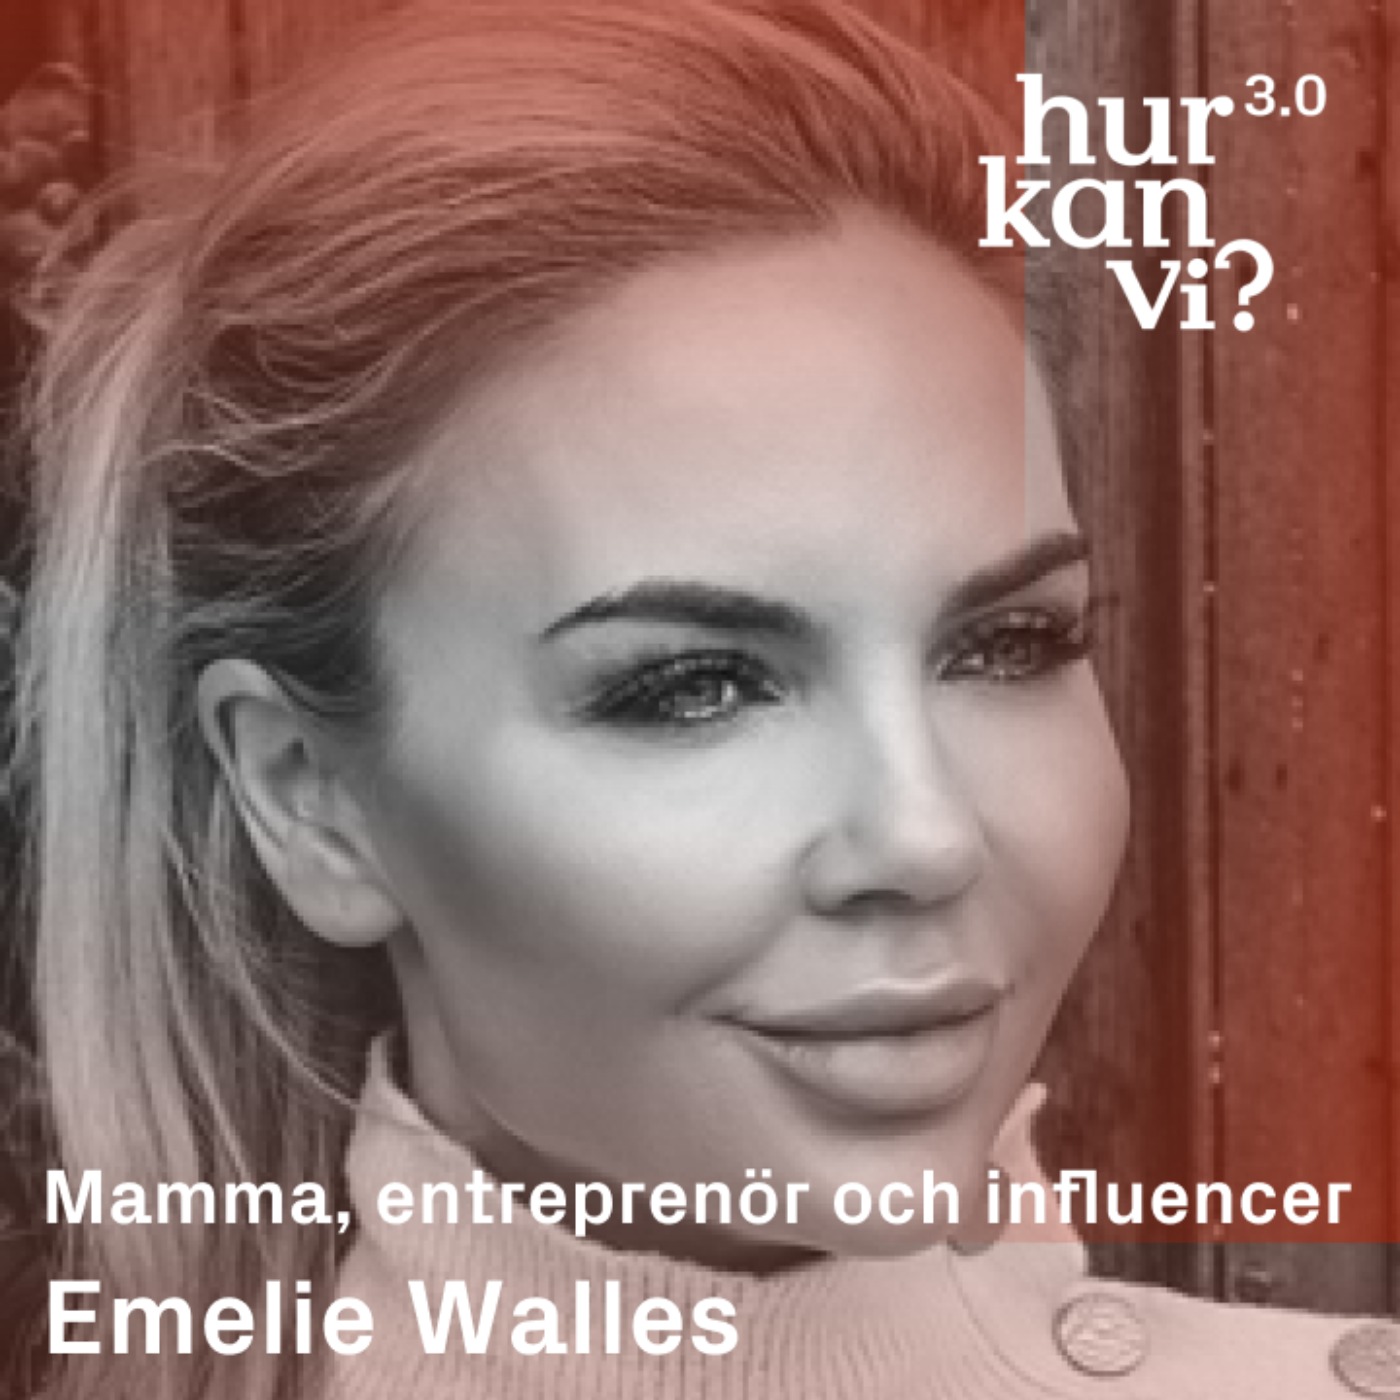 Emelie Walles - Mamma, entreprenör och influencer